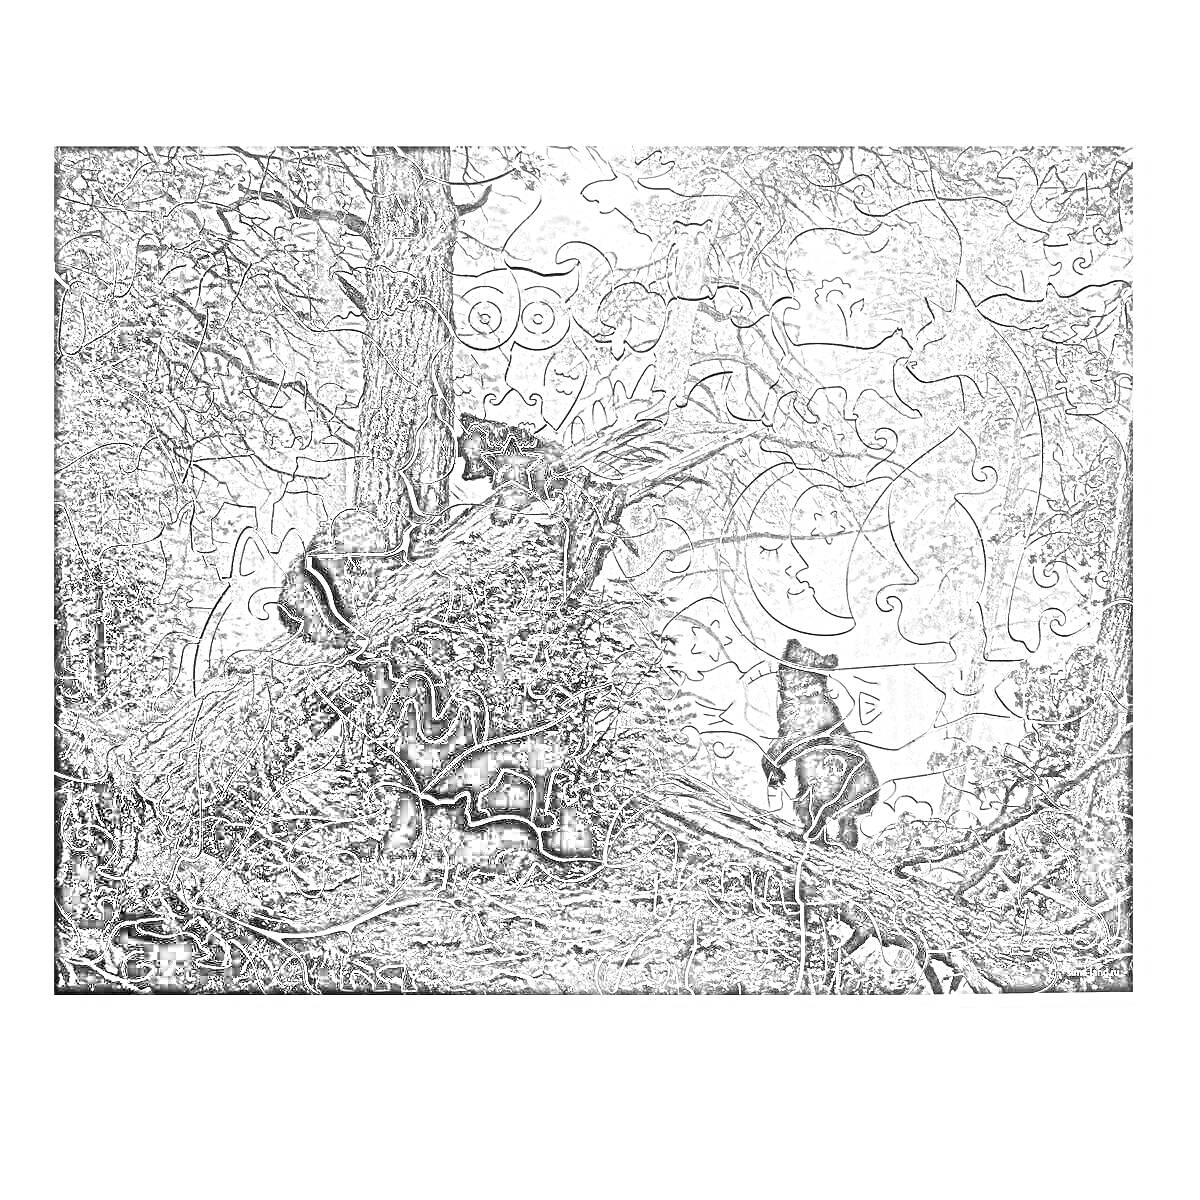 Раскраска Утро в сосновом лесу - три медвежонка играют на упавшем дереве среди высоких сосен